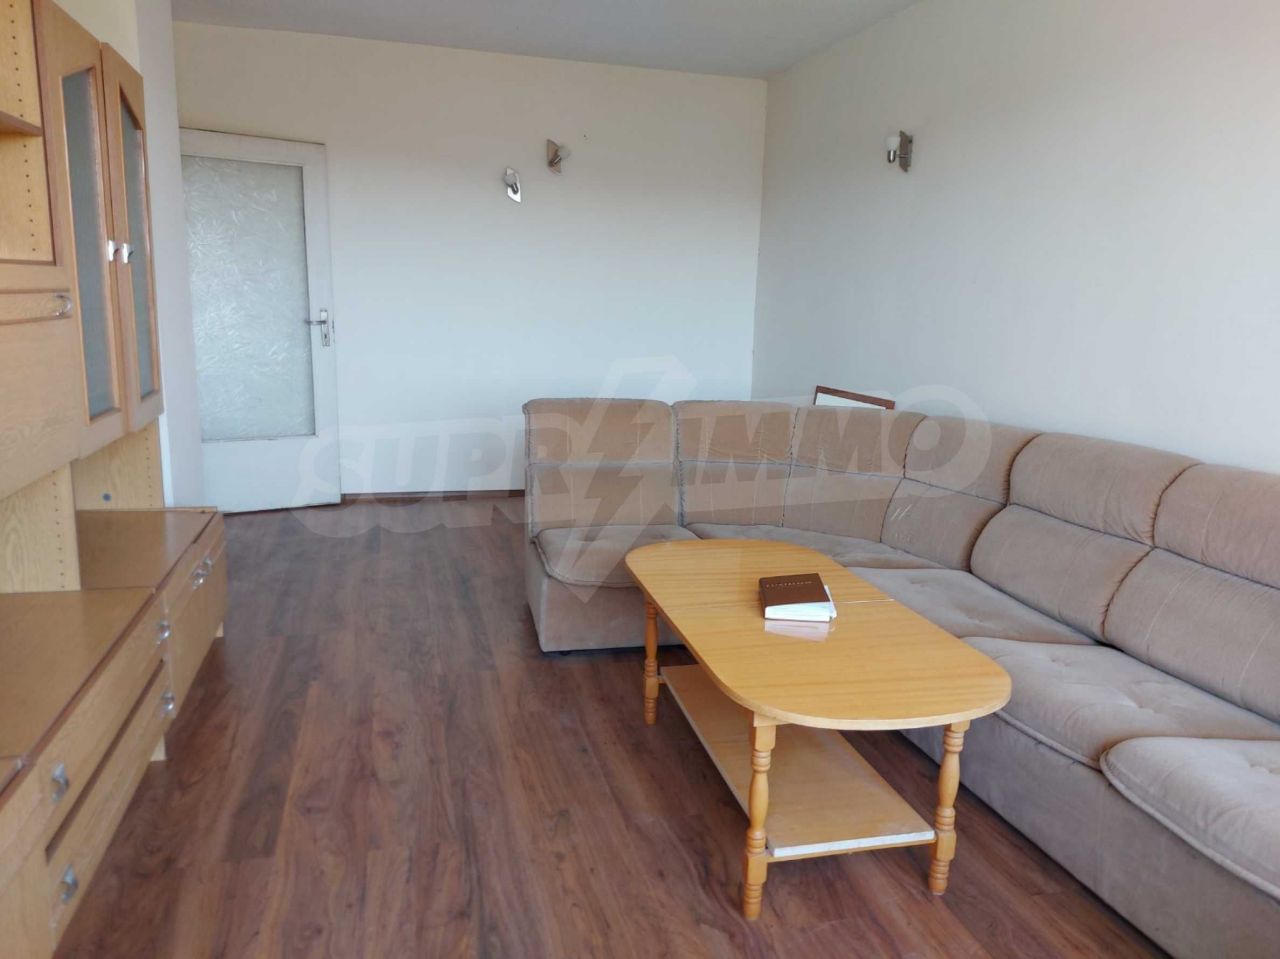 Apartment in Ruse, Bulgaria, 59.71 sq.m - picture 1